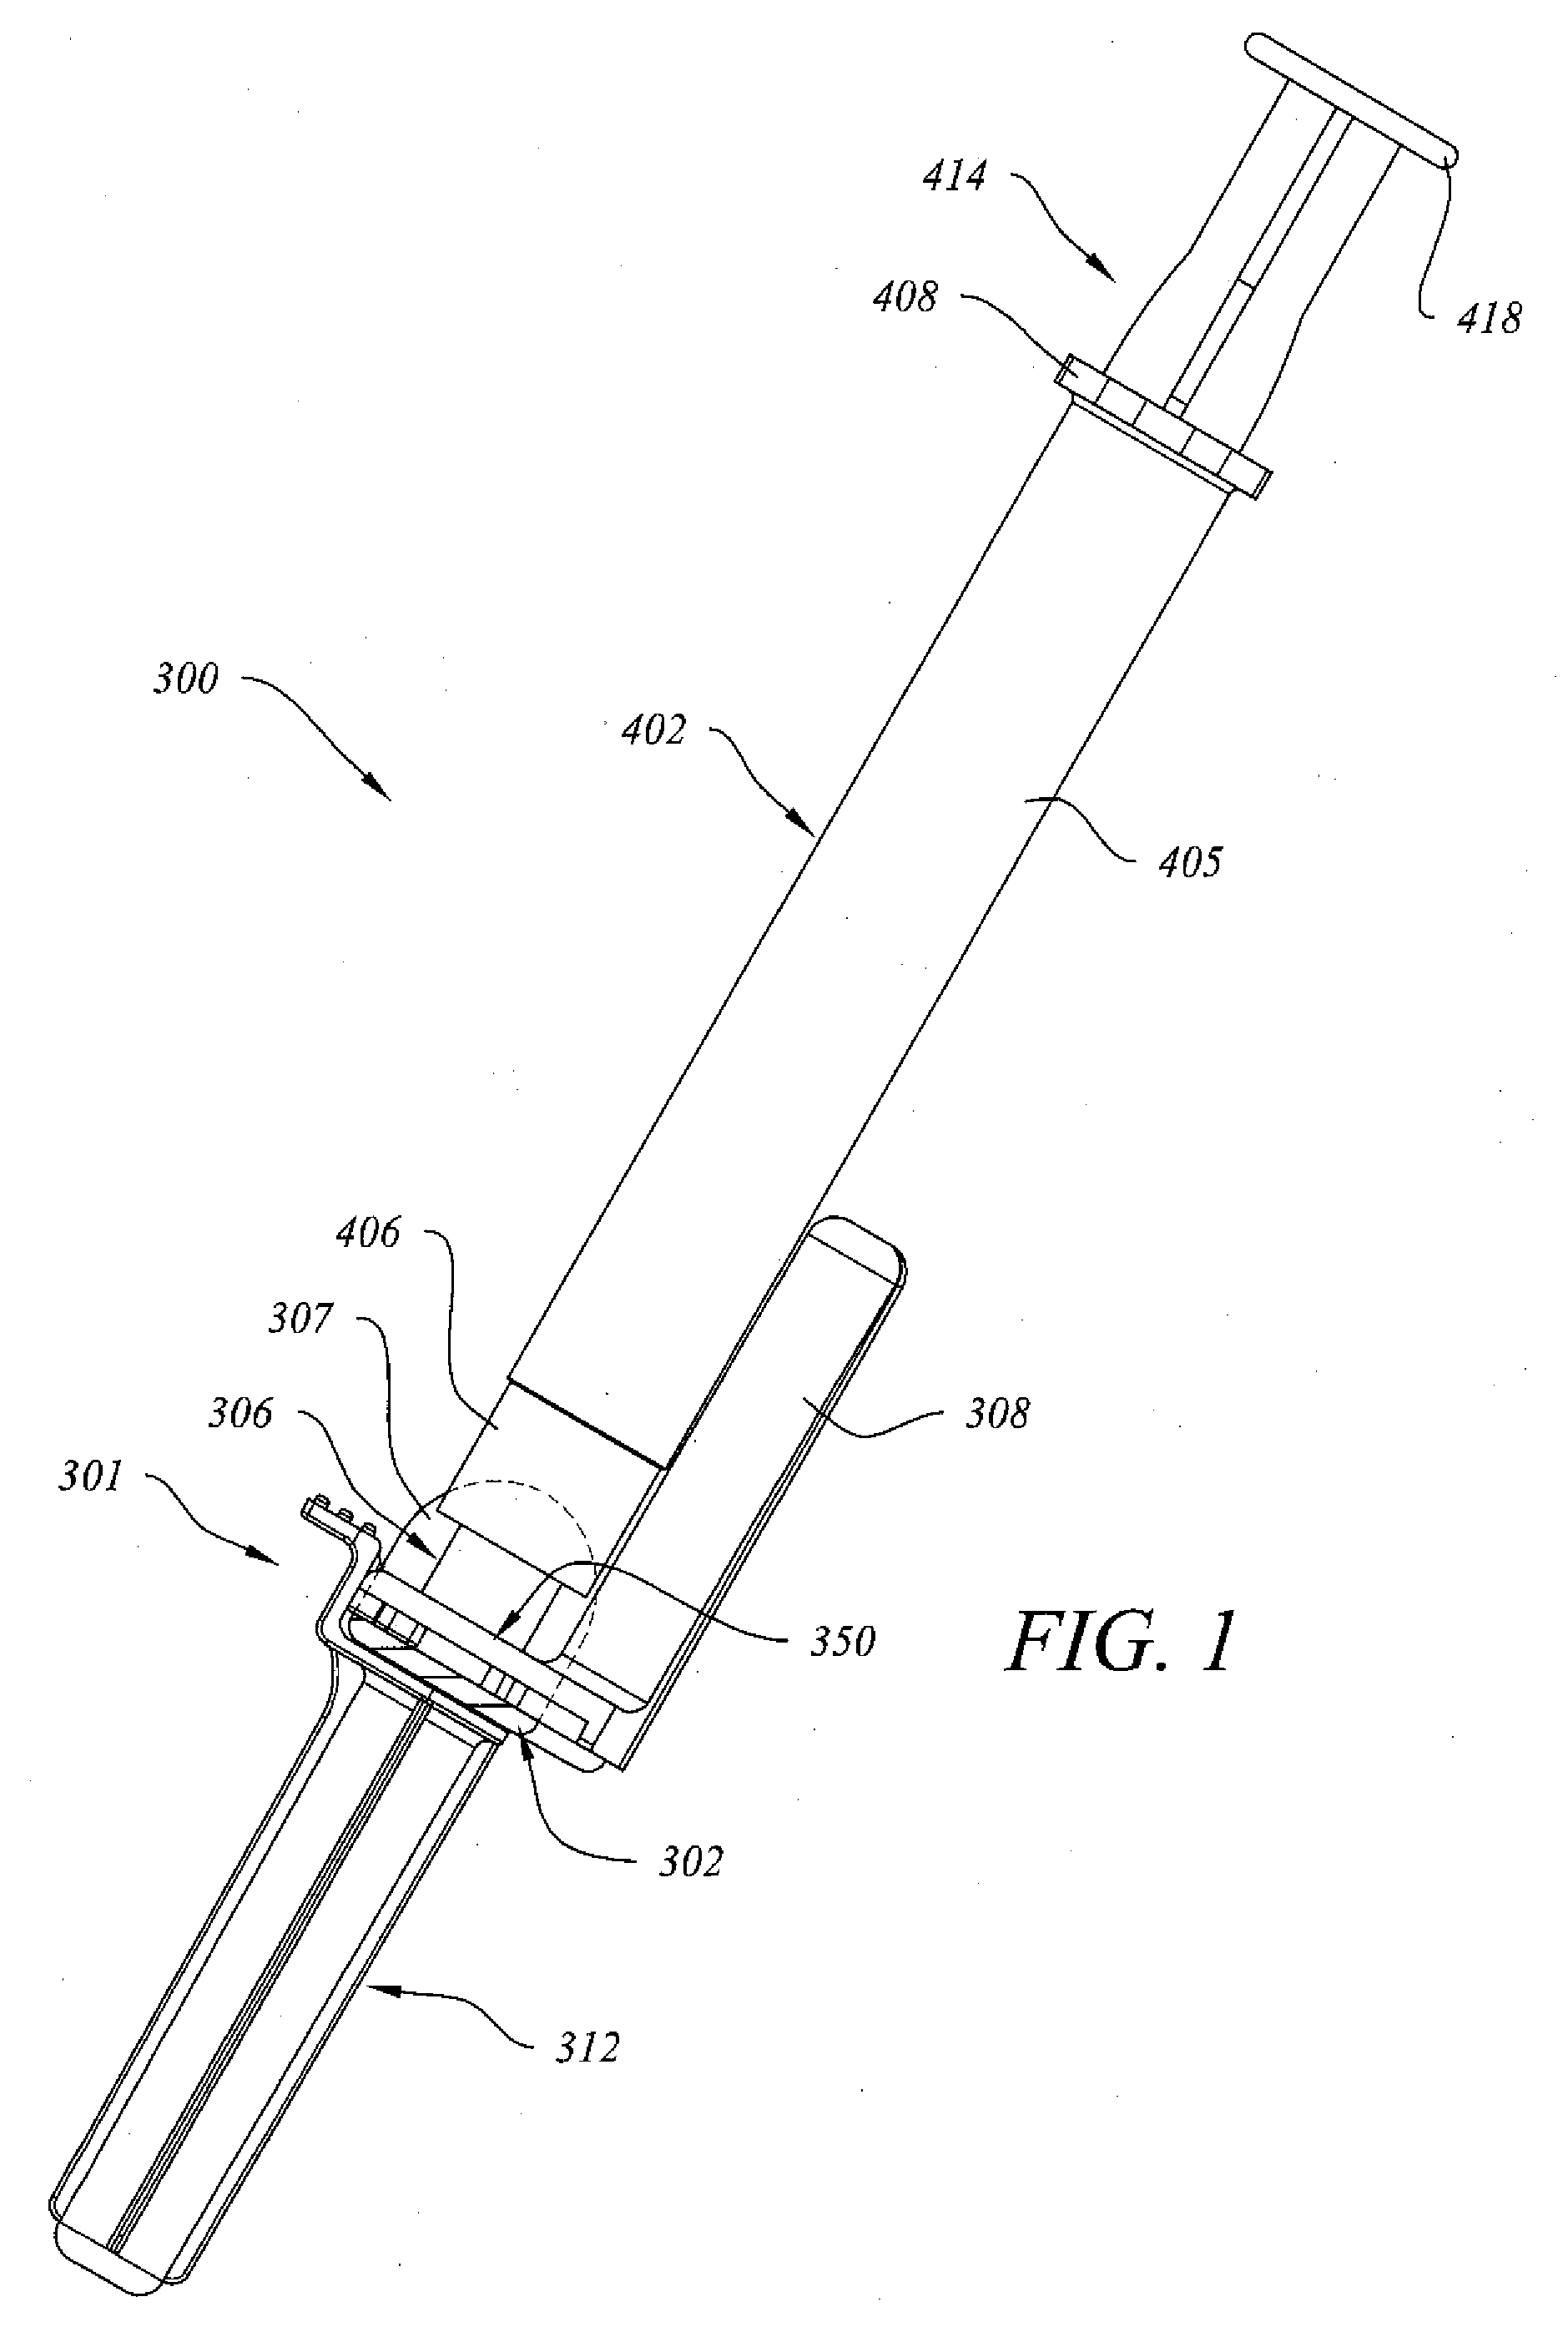 Needle Retraction Apparatus